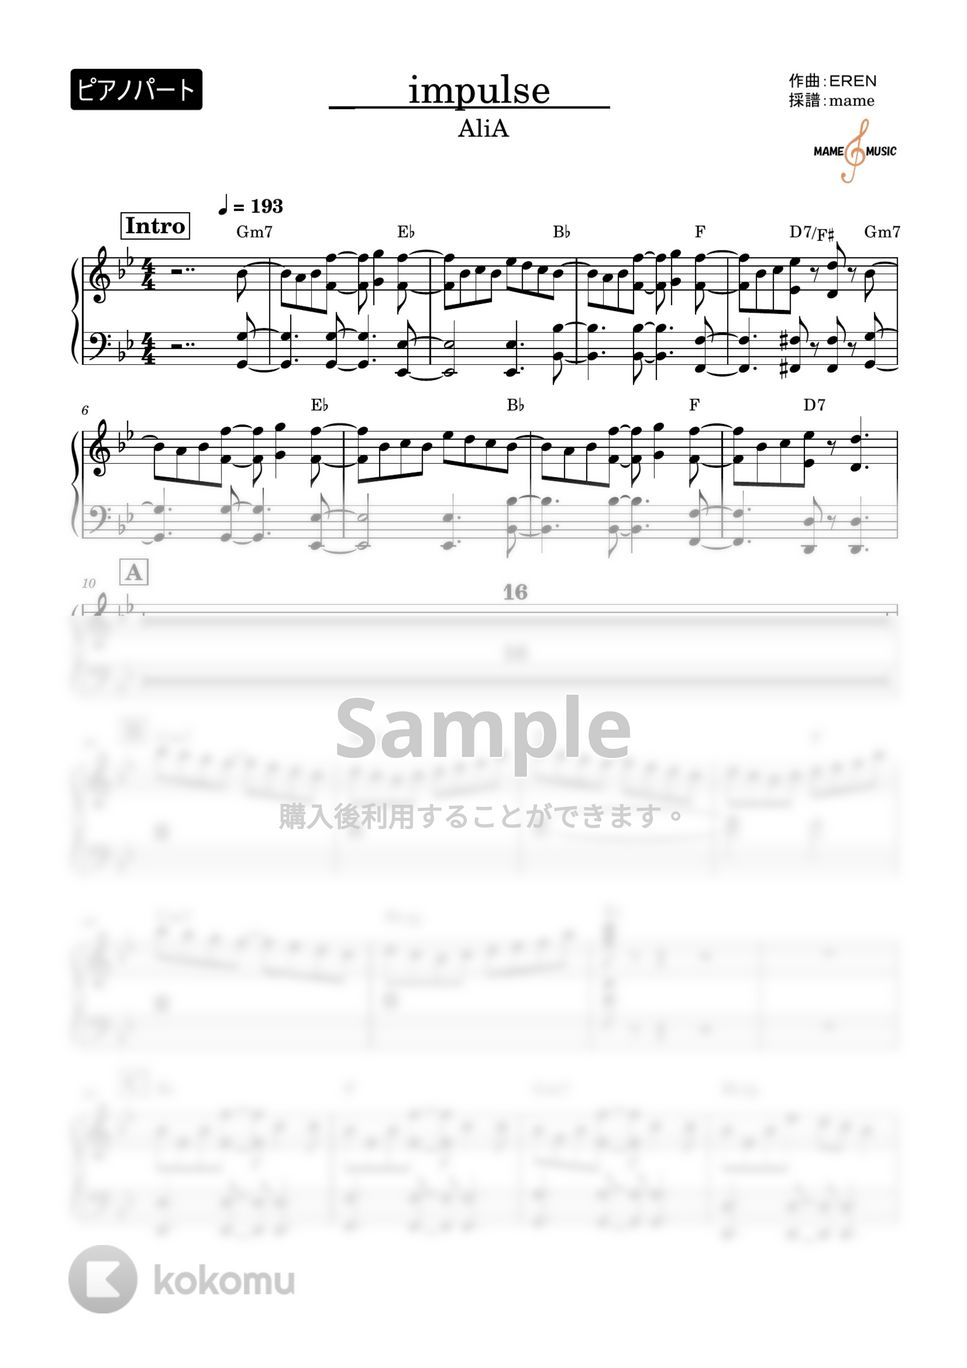 Alia - impulse (ピアノパート) by mame